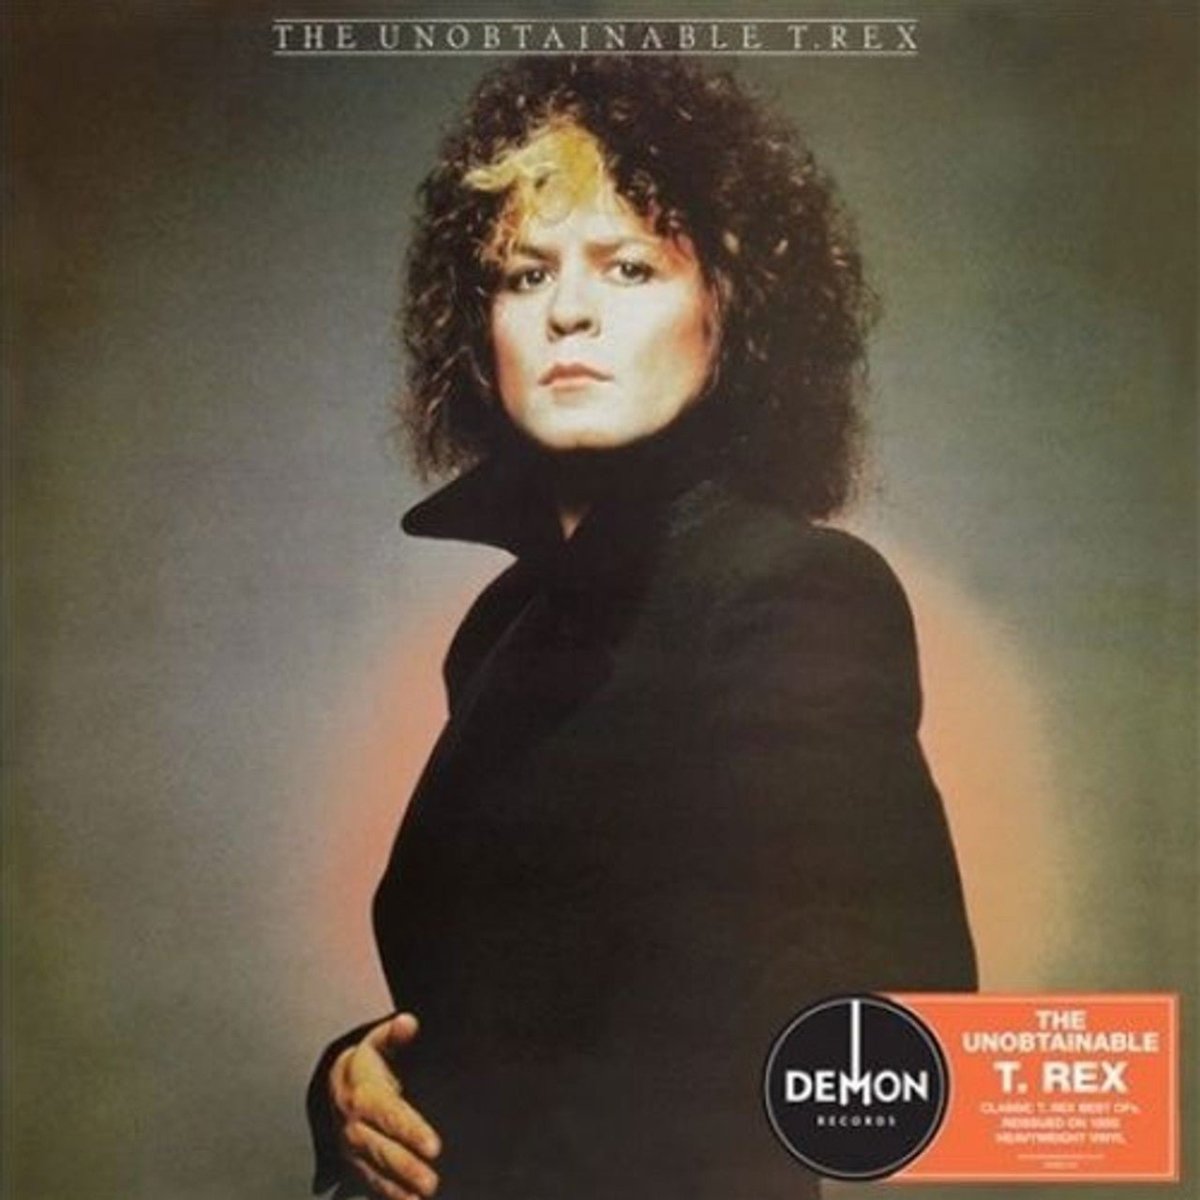 T. Rex - The Unobtainable T. Rex Records & LPs Vinyl